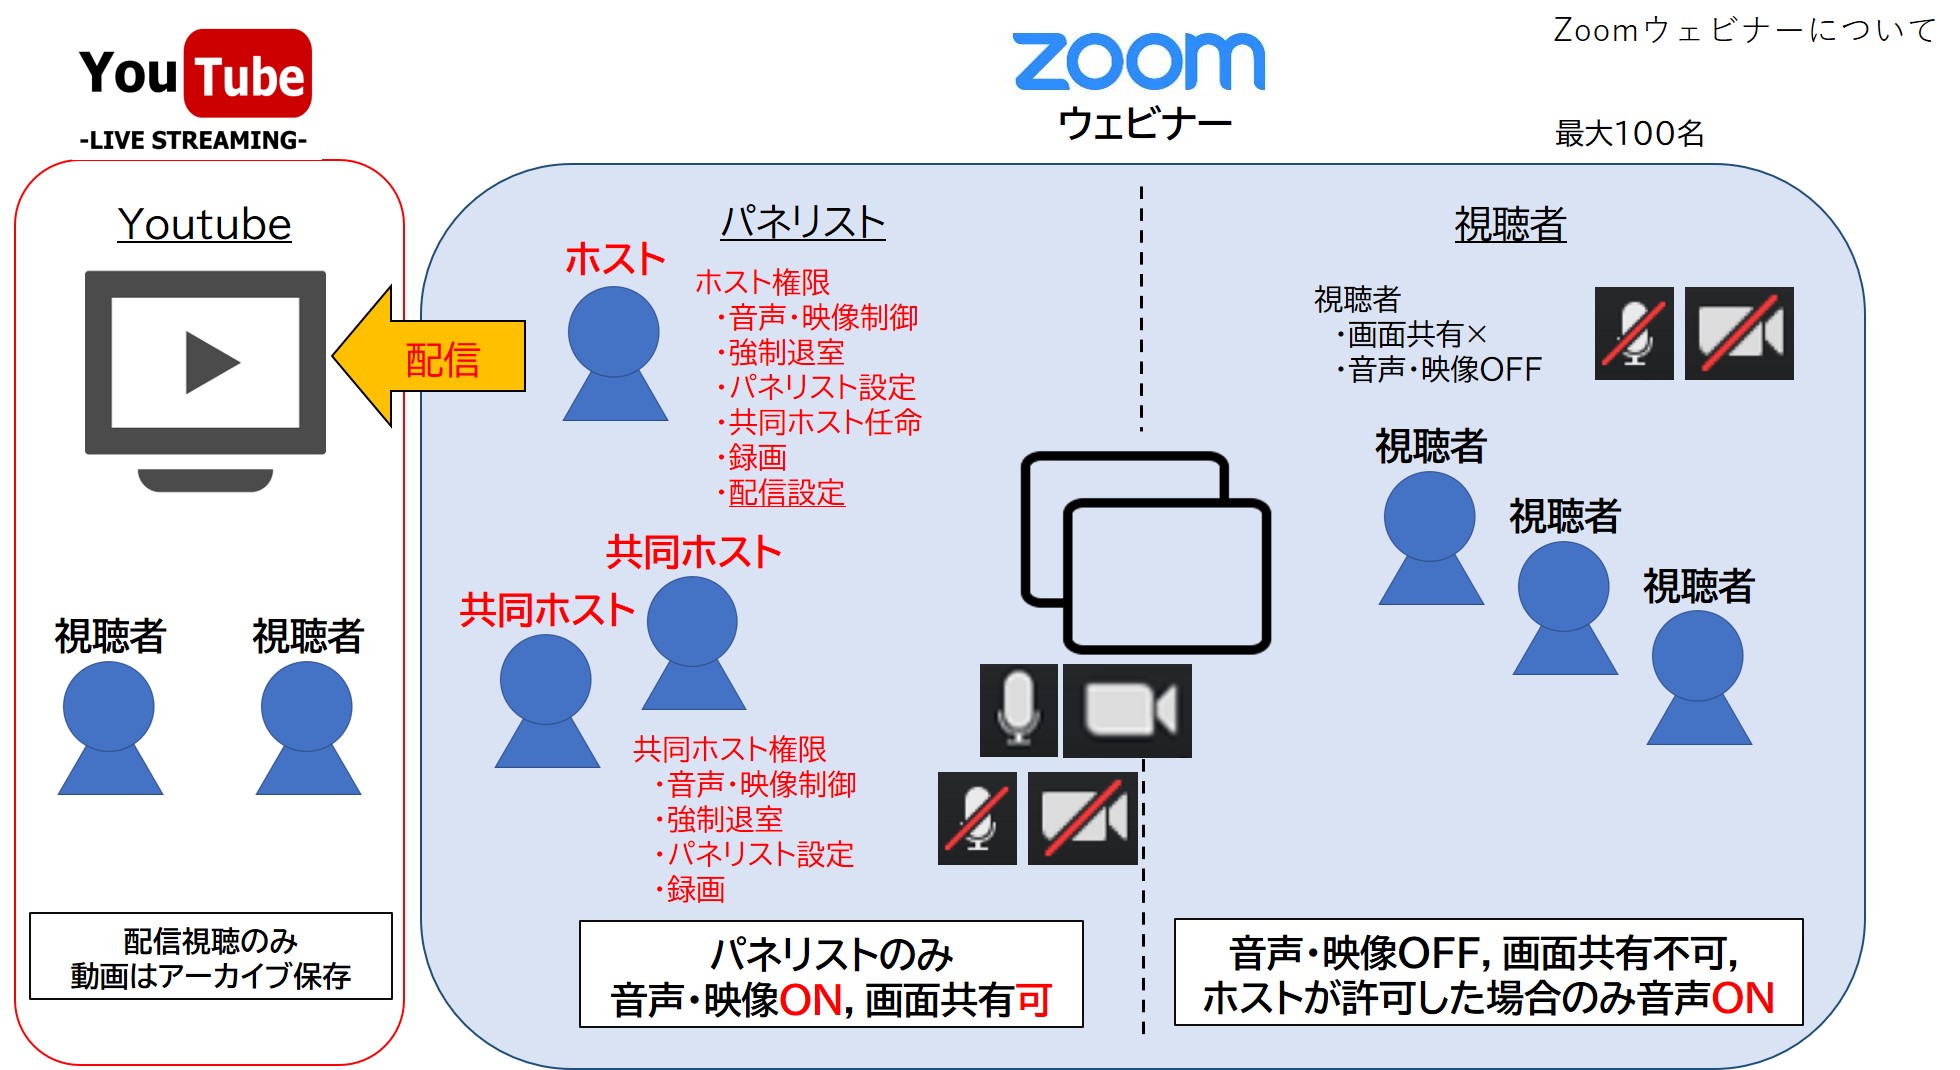 共同 ホスト Zoom Zoomを使ったミーティングで共同ホストを設定する方法とは